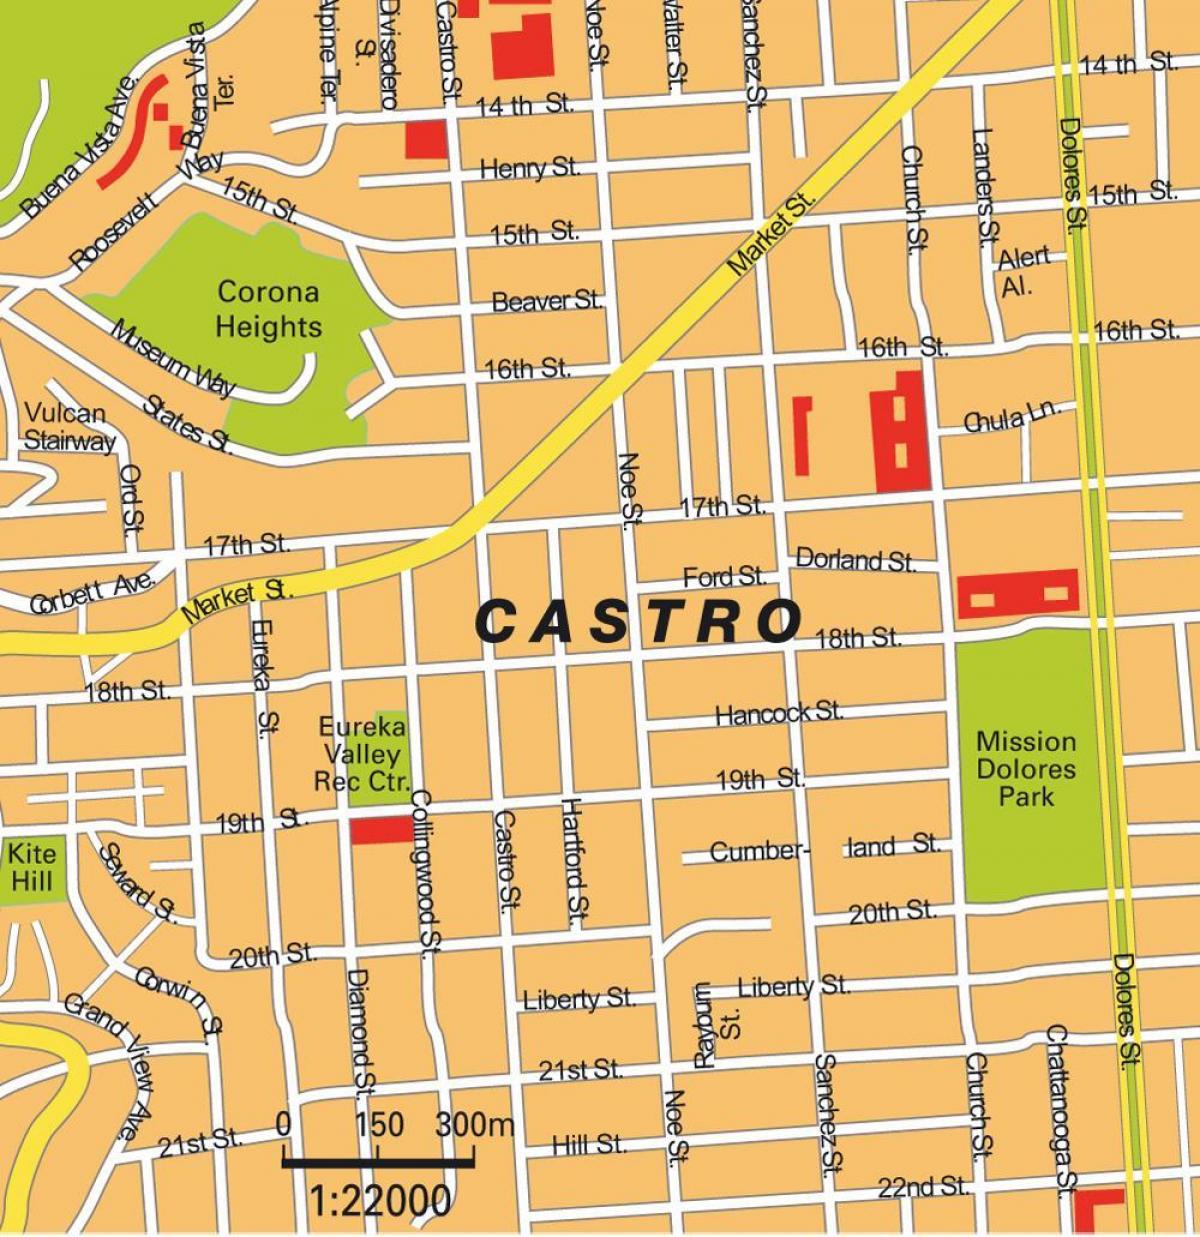 نقشه کاسترو منطقه در سان فرانسیسکو